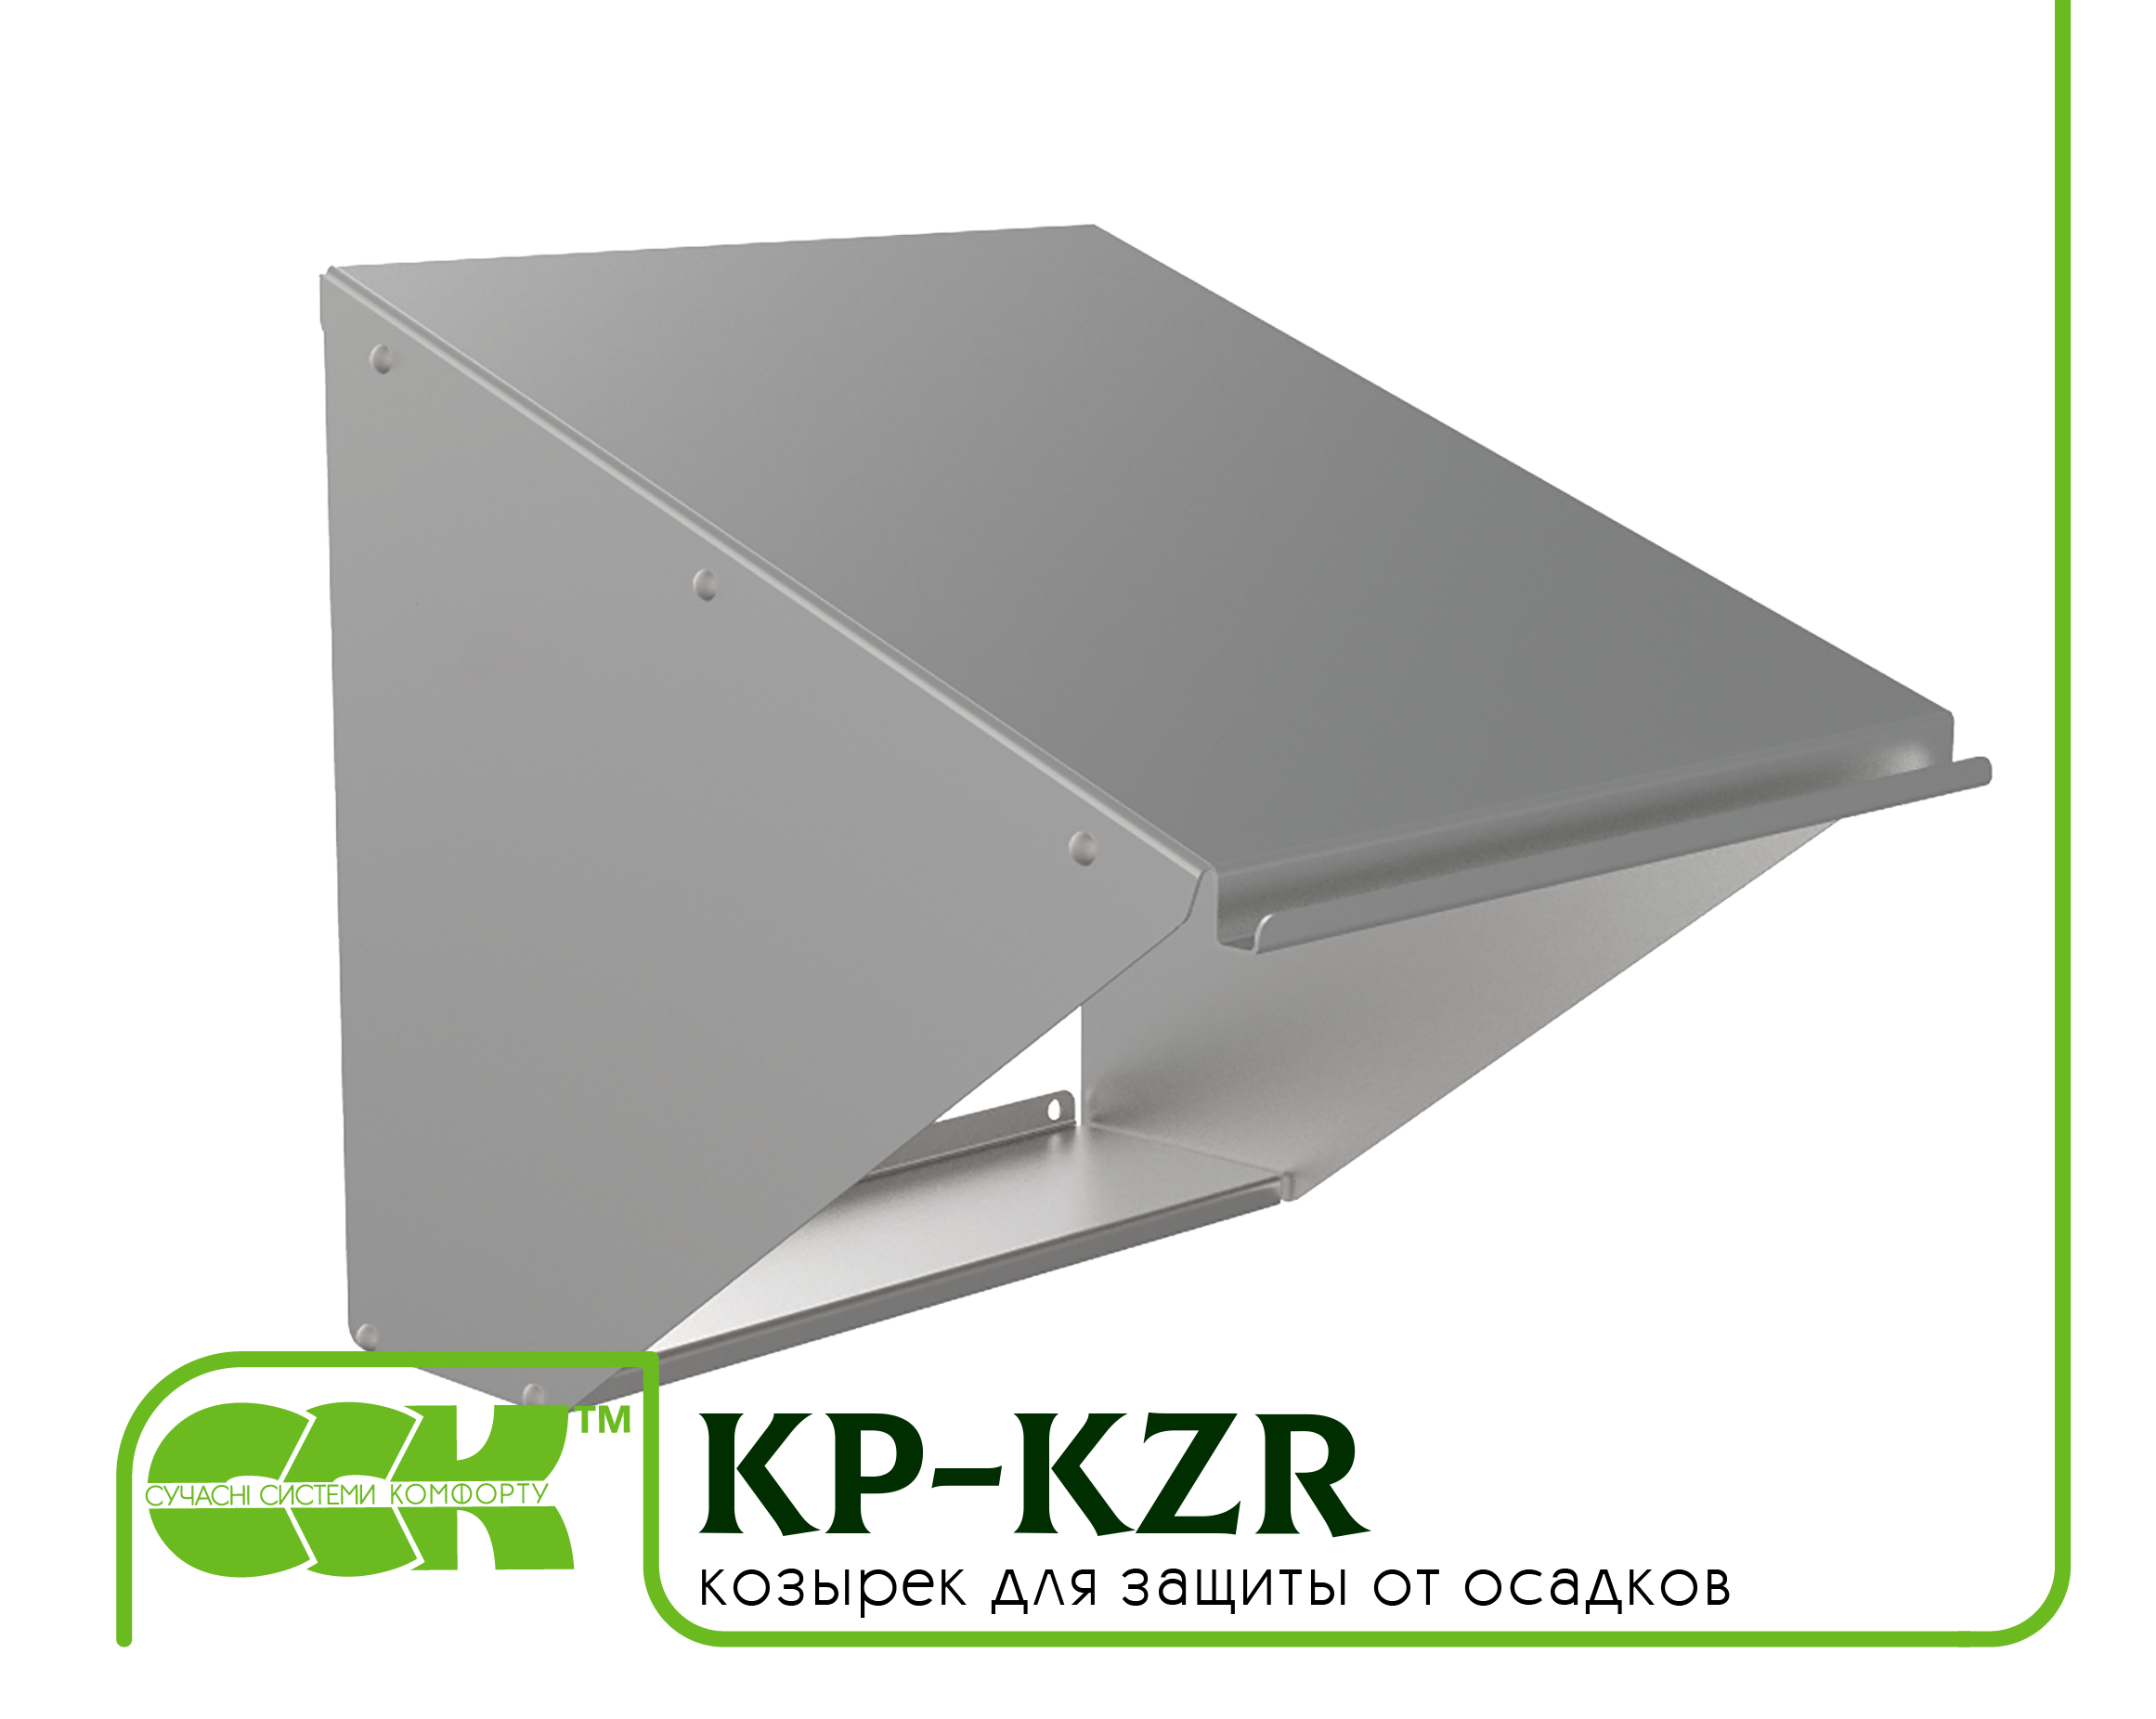 Козырек для защиты вентилятора KP-KZR-46-46